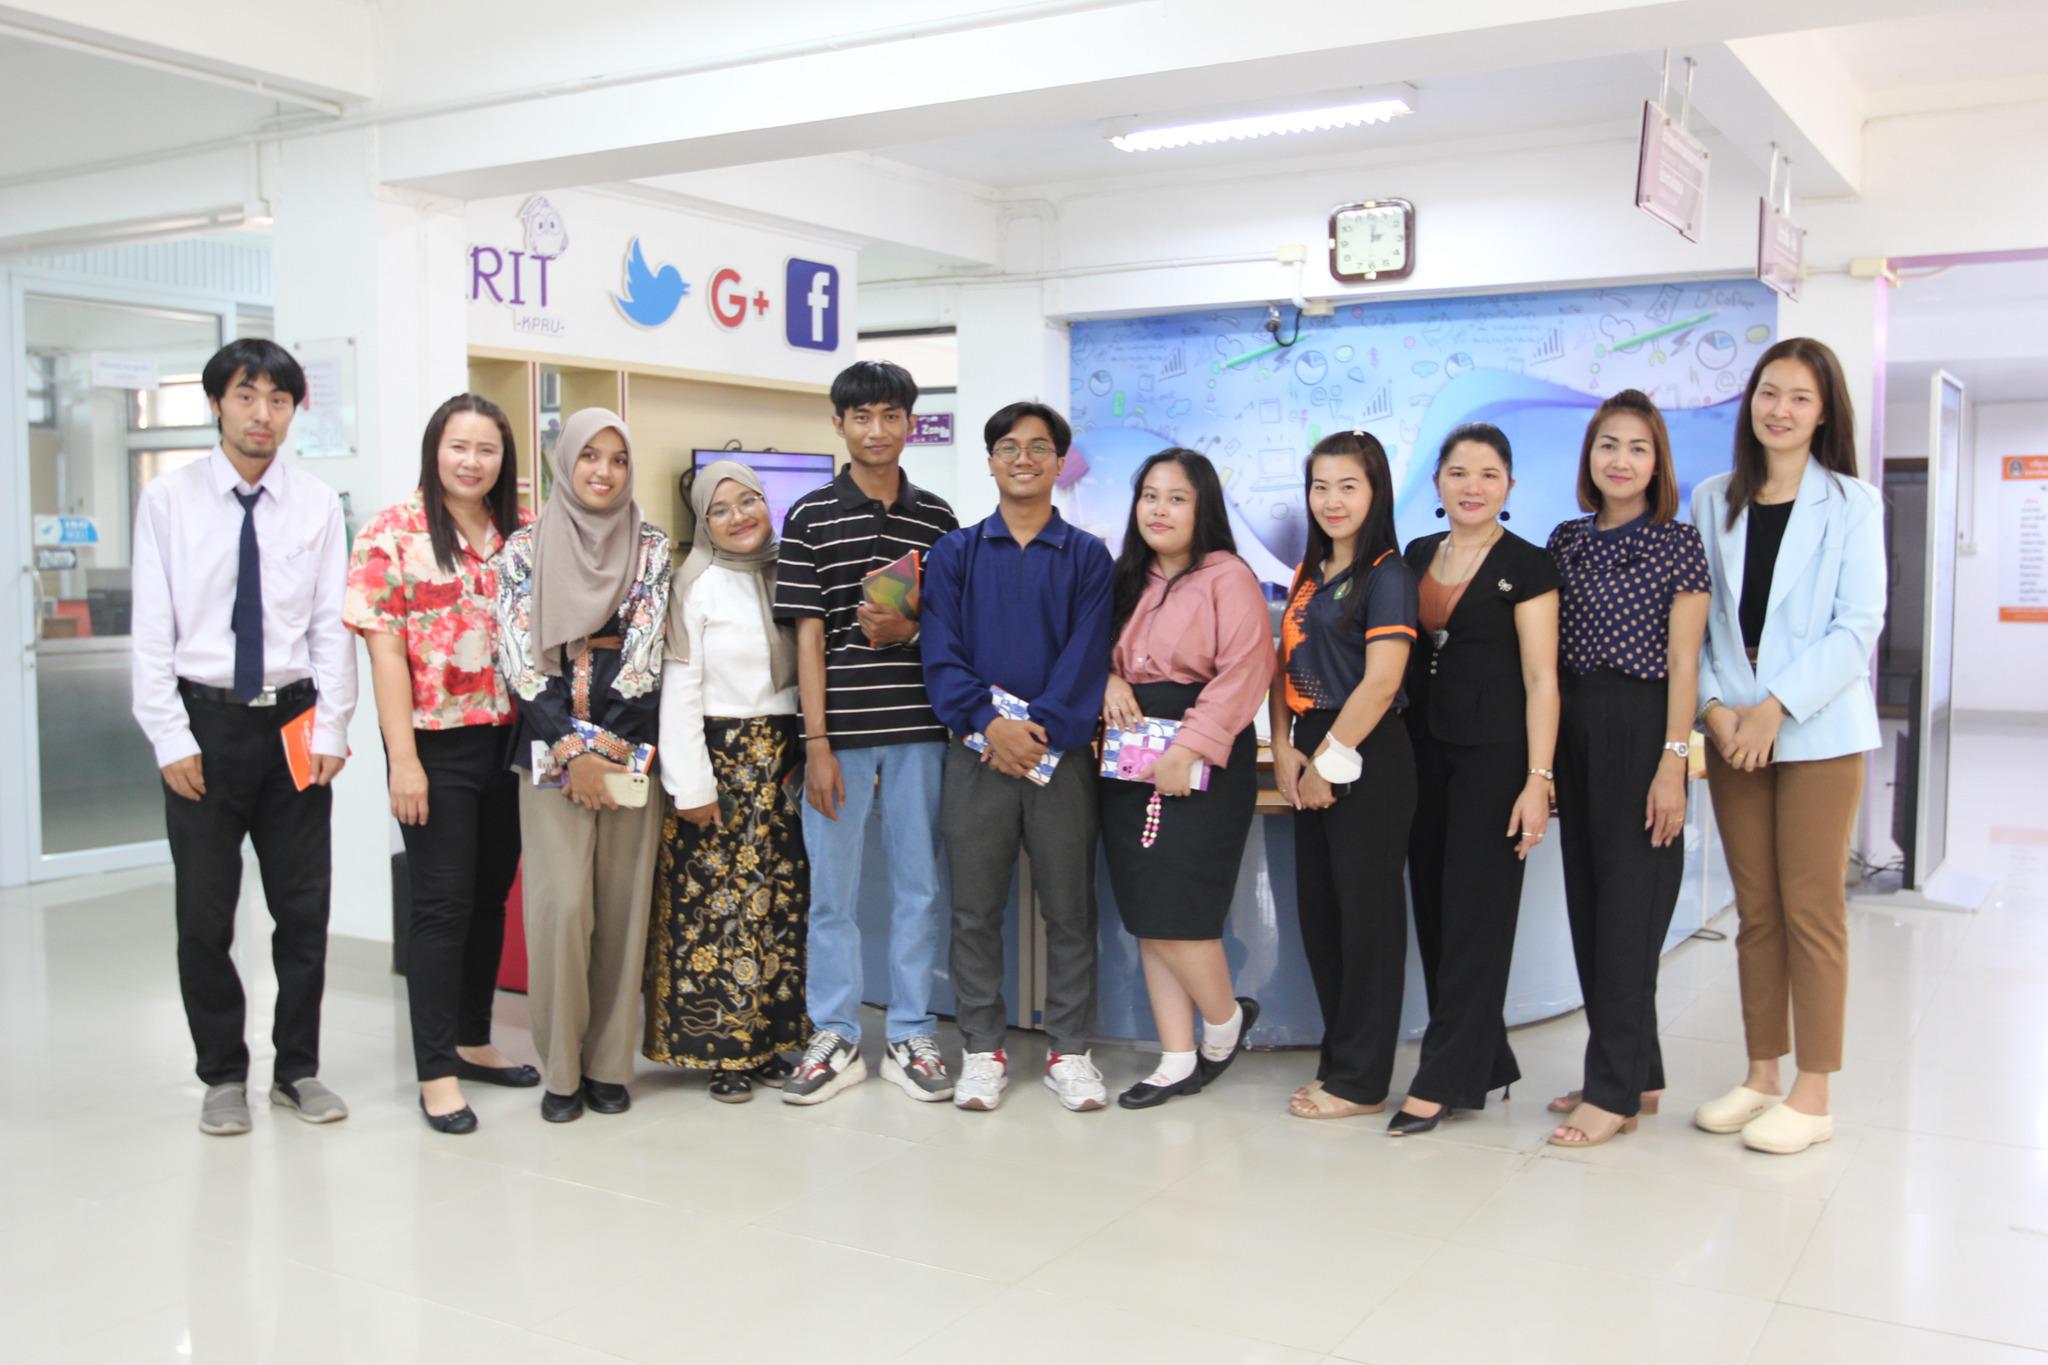 29. ต้อนรับนักศึกษาแลกเปลี่ยนจาก Universitas Negeri Surabaya ประเทศอินโดนีเซีย เยี่ยมชมสำนักวิทยบริการและเทคโนโลยีสารสนเทศ มหาวิทยาลัยราชภัฏกำแพงเพชร